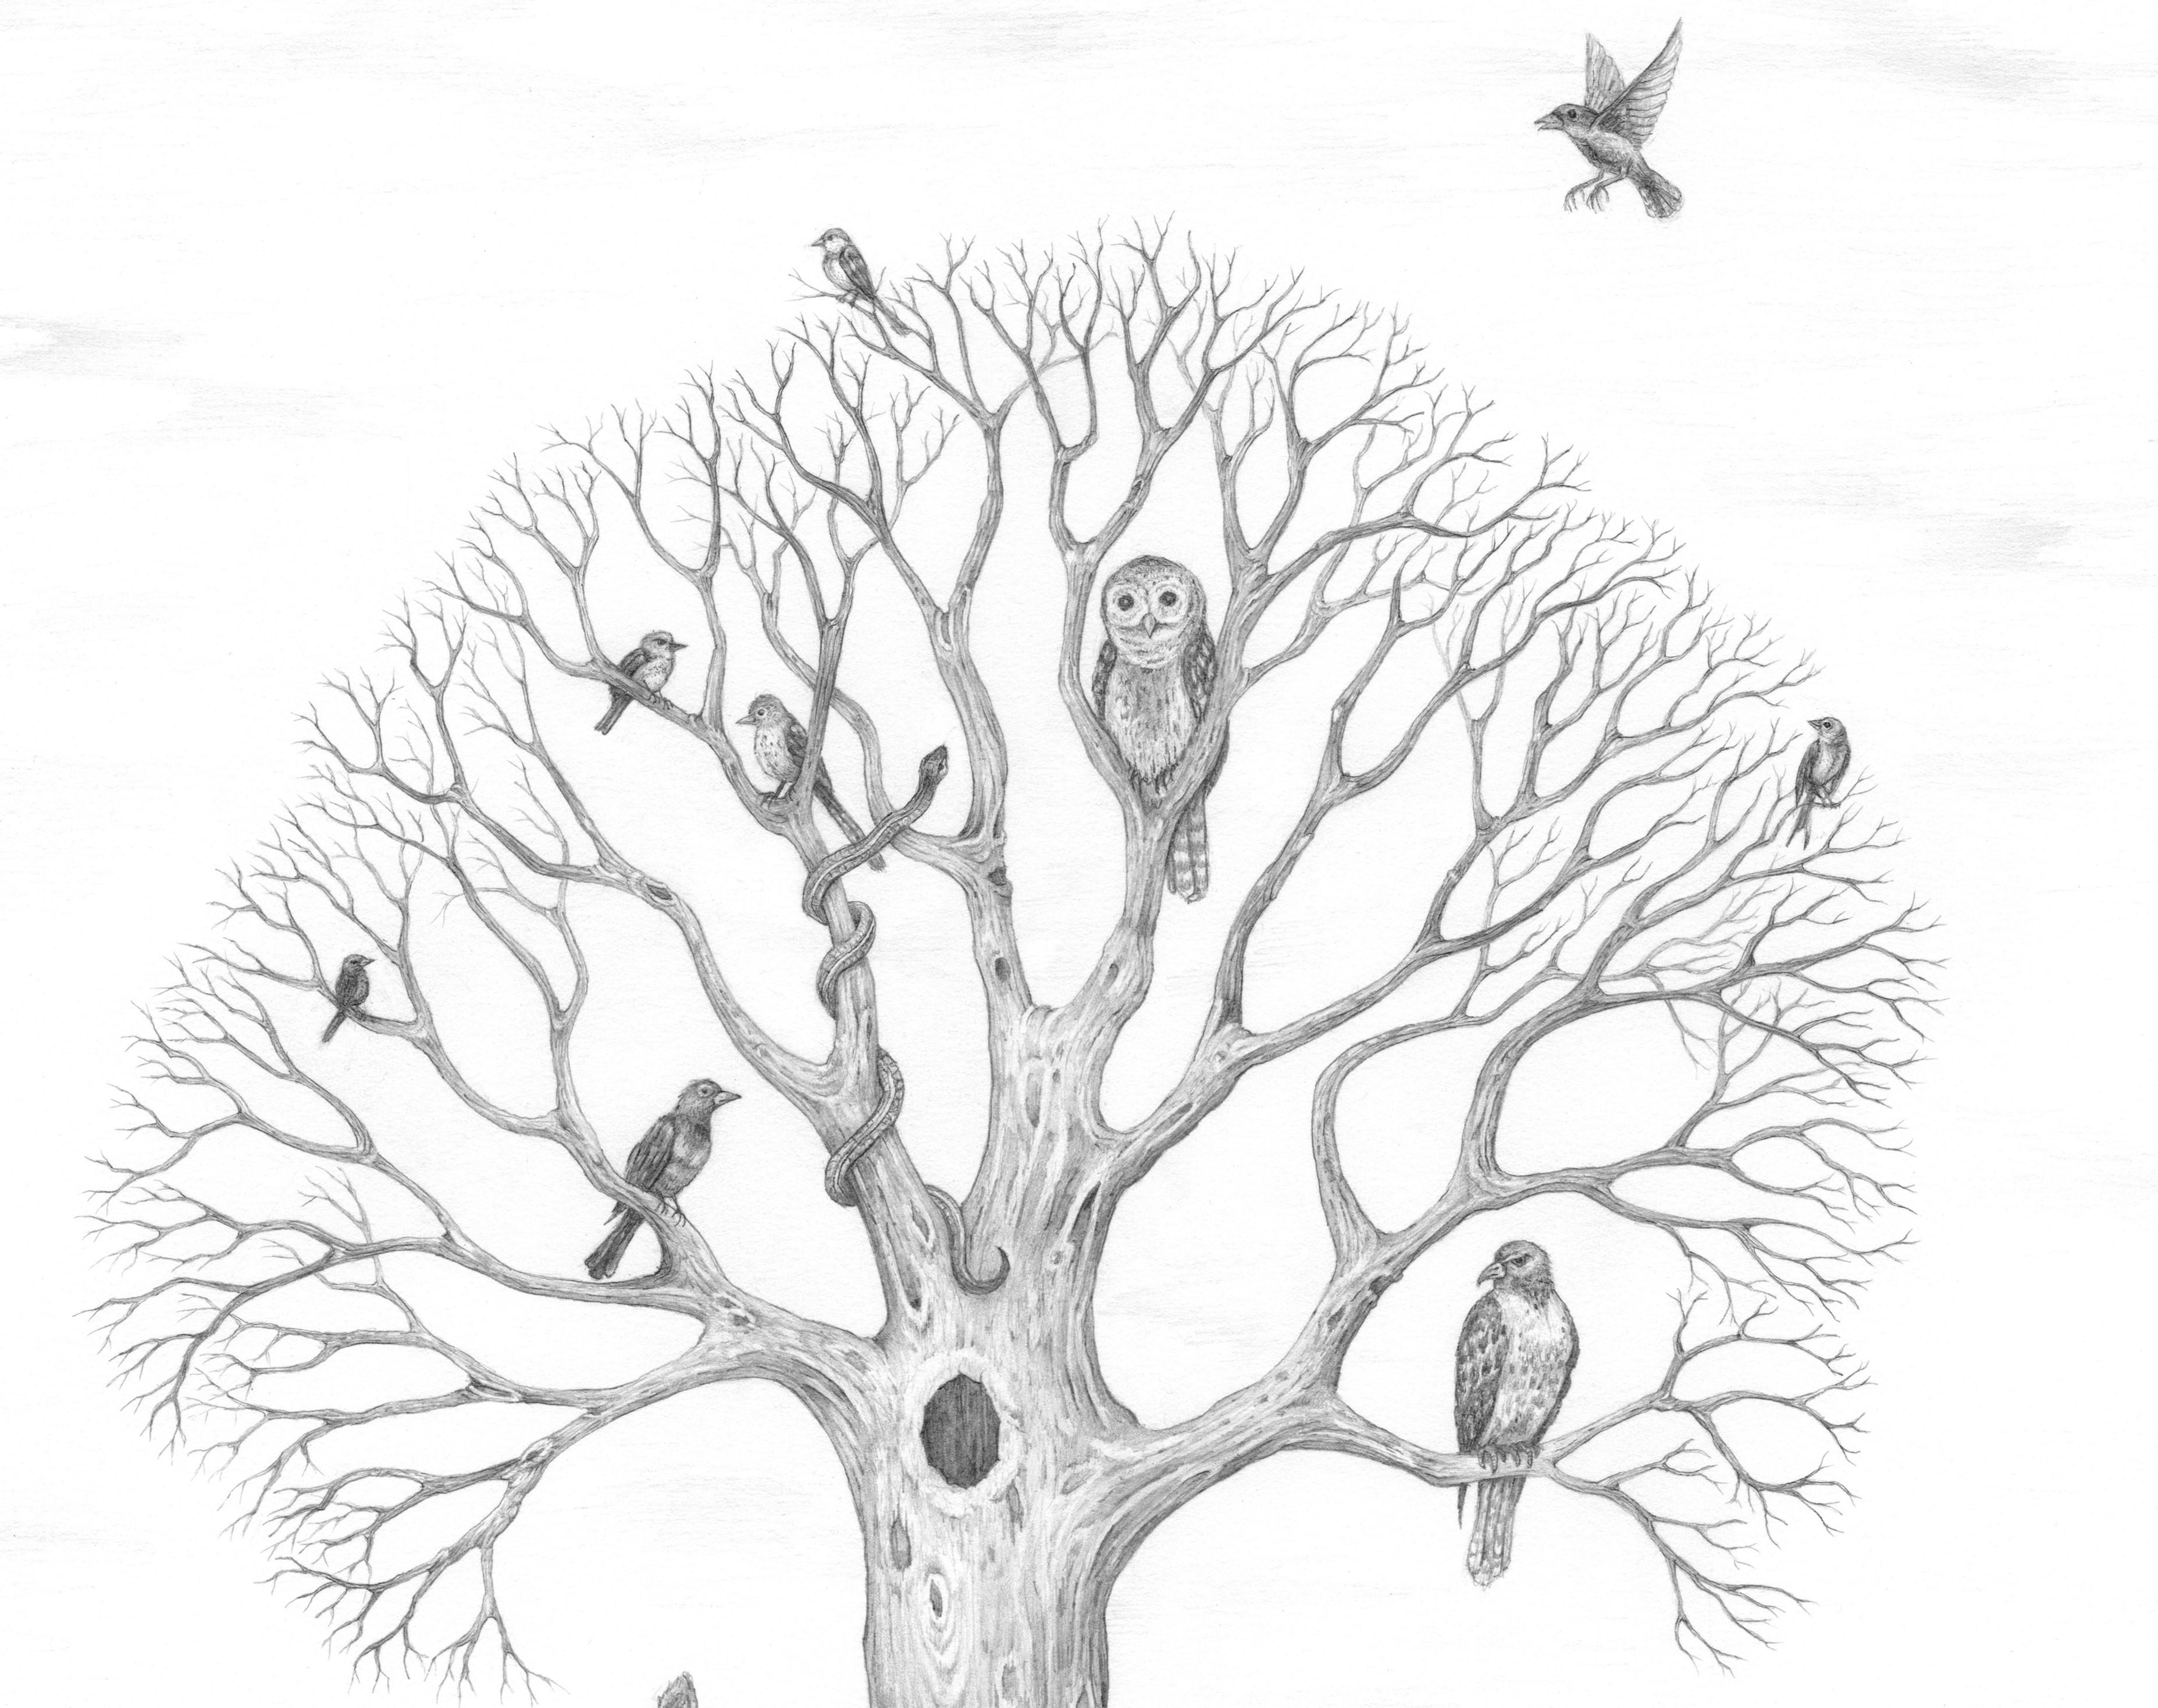 Tales from the Woods ist eine Sammlung von Zeichnungen und Drucken von Mark Hosford, die sich mit der Interaktion des Menschen mit der Natur und seinen einzigartigen Beziehungen zur Natur befassen. Mark Hosford hat einen BFA in Studio Arts von der